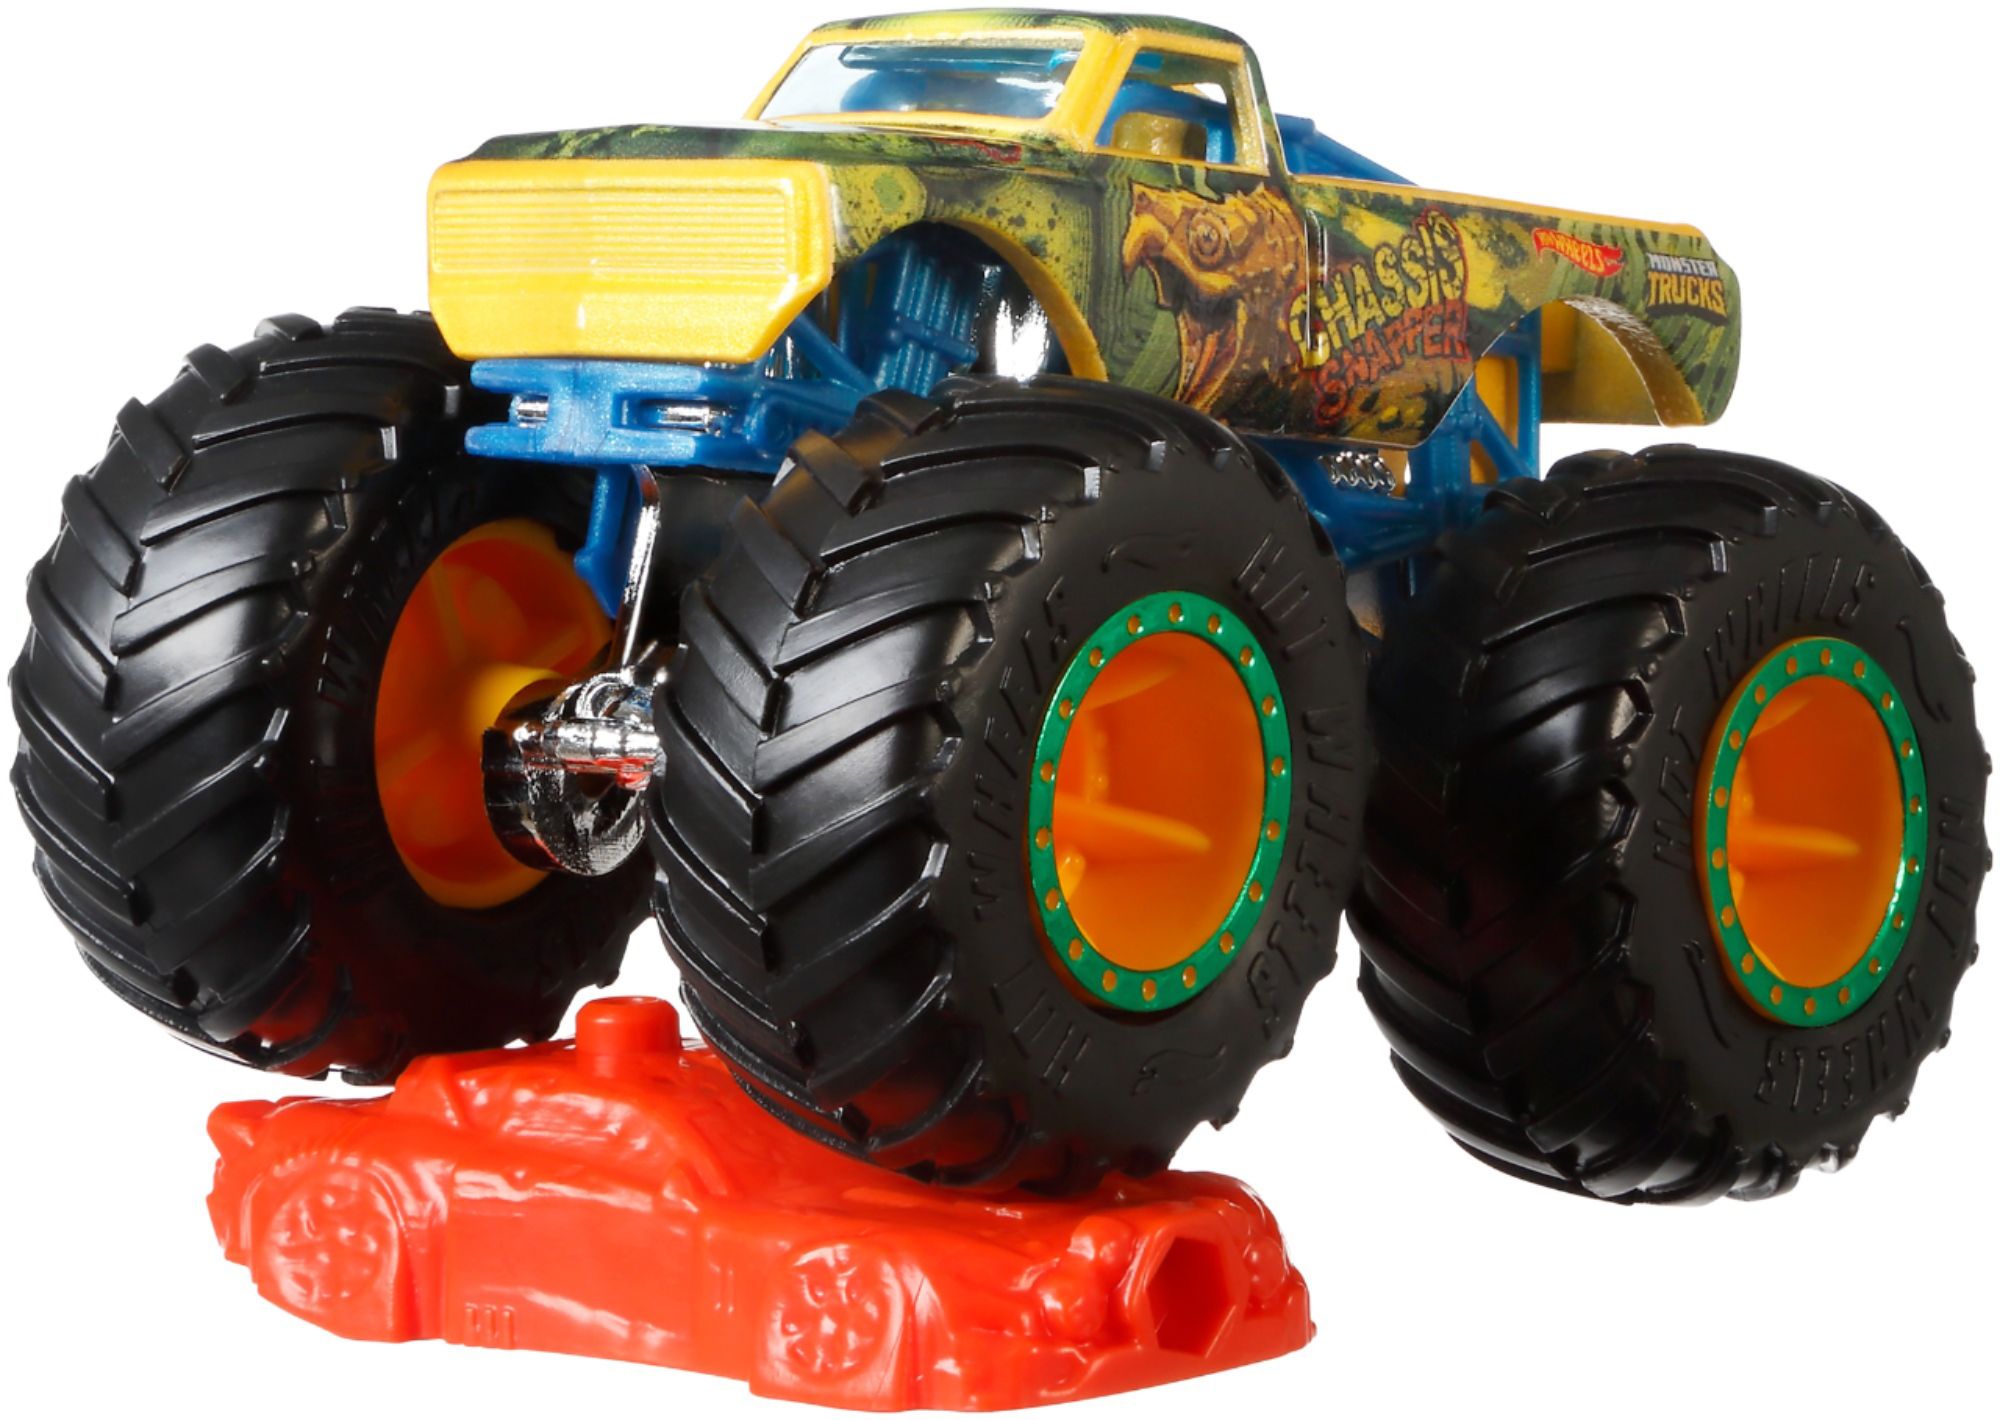 little monster truck toys